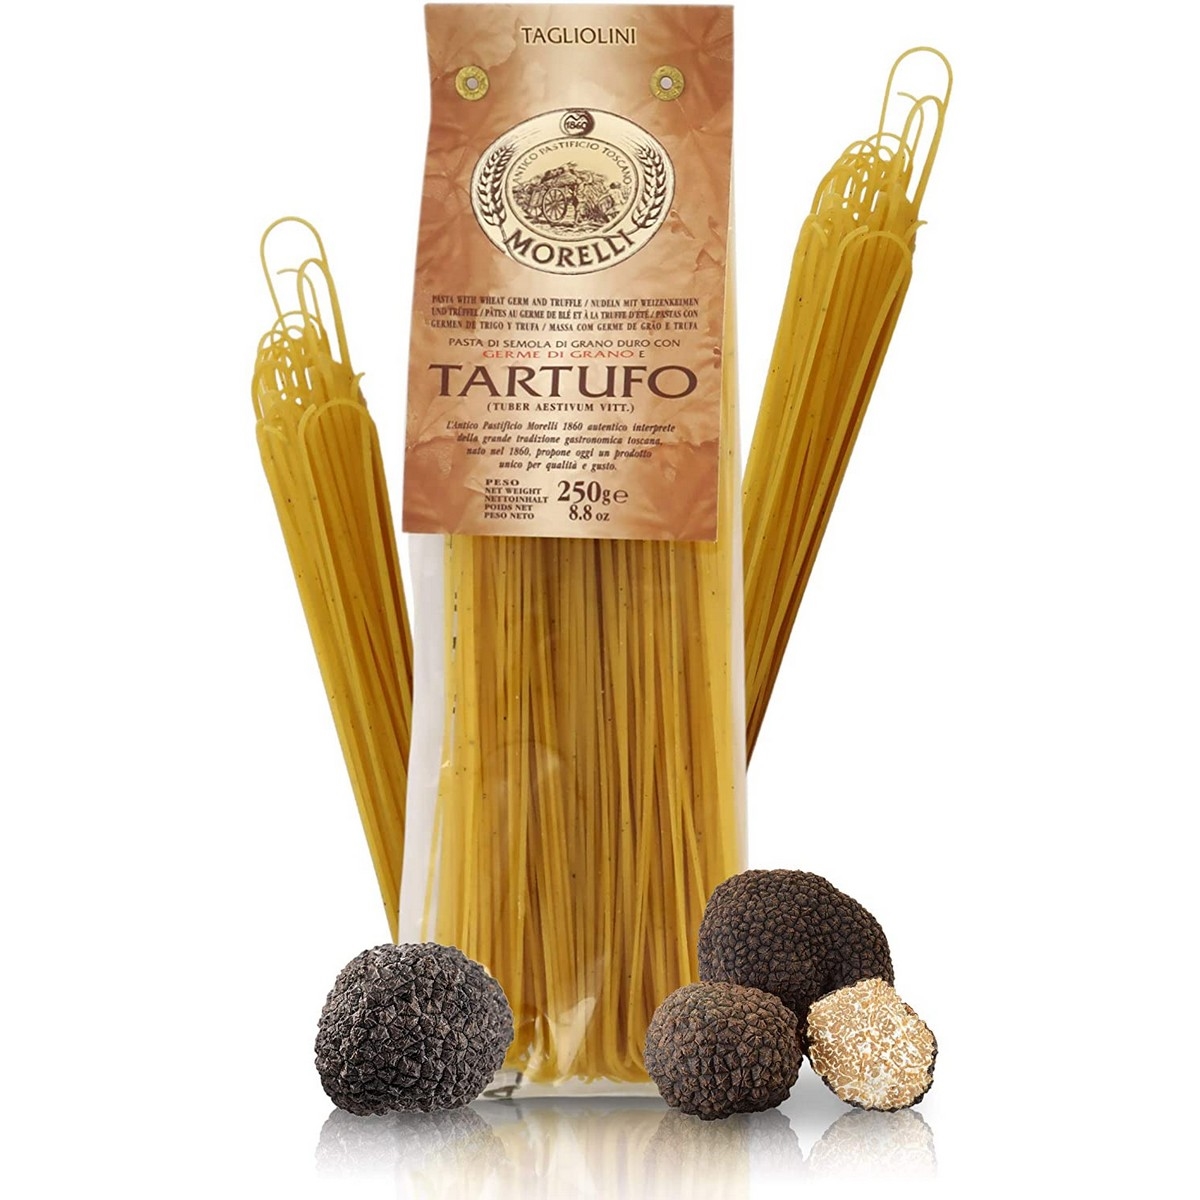 Antico Pastificio Morelli - Flavoured Pasta - Truffle - Tagliolini - 250 g